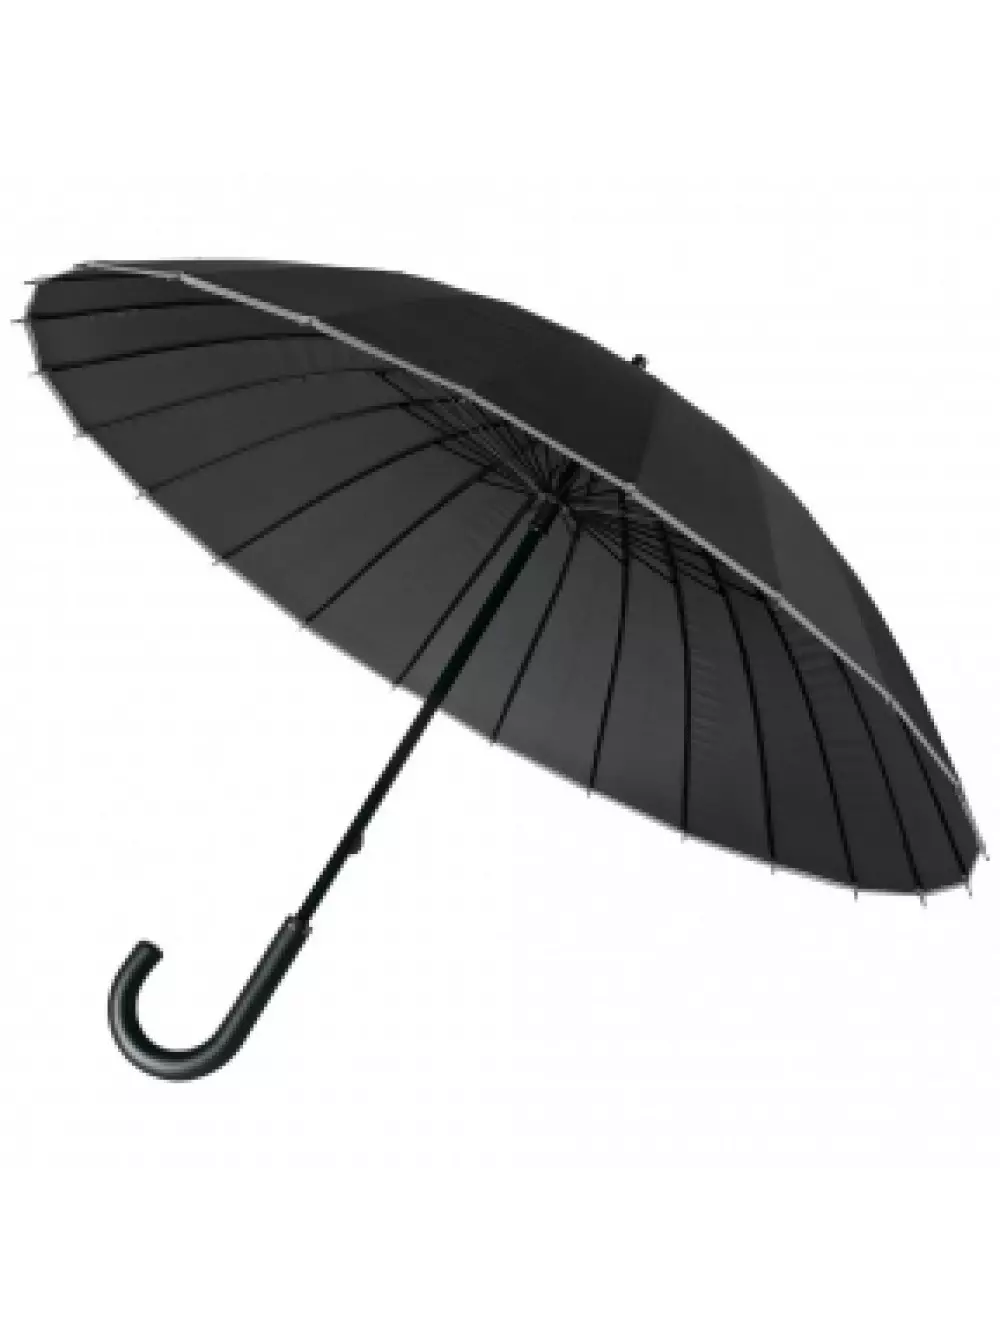 Malamalama umbrellas (74 ata): Tamaitai faataitaiga 15234_14